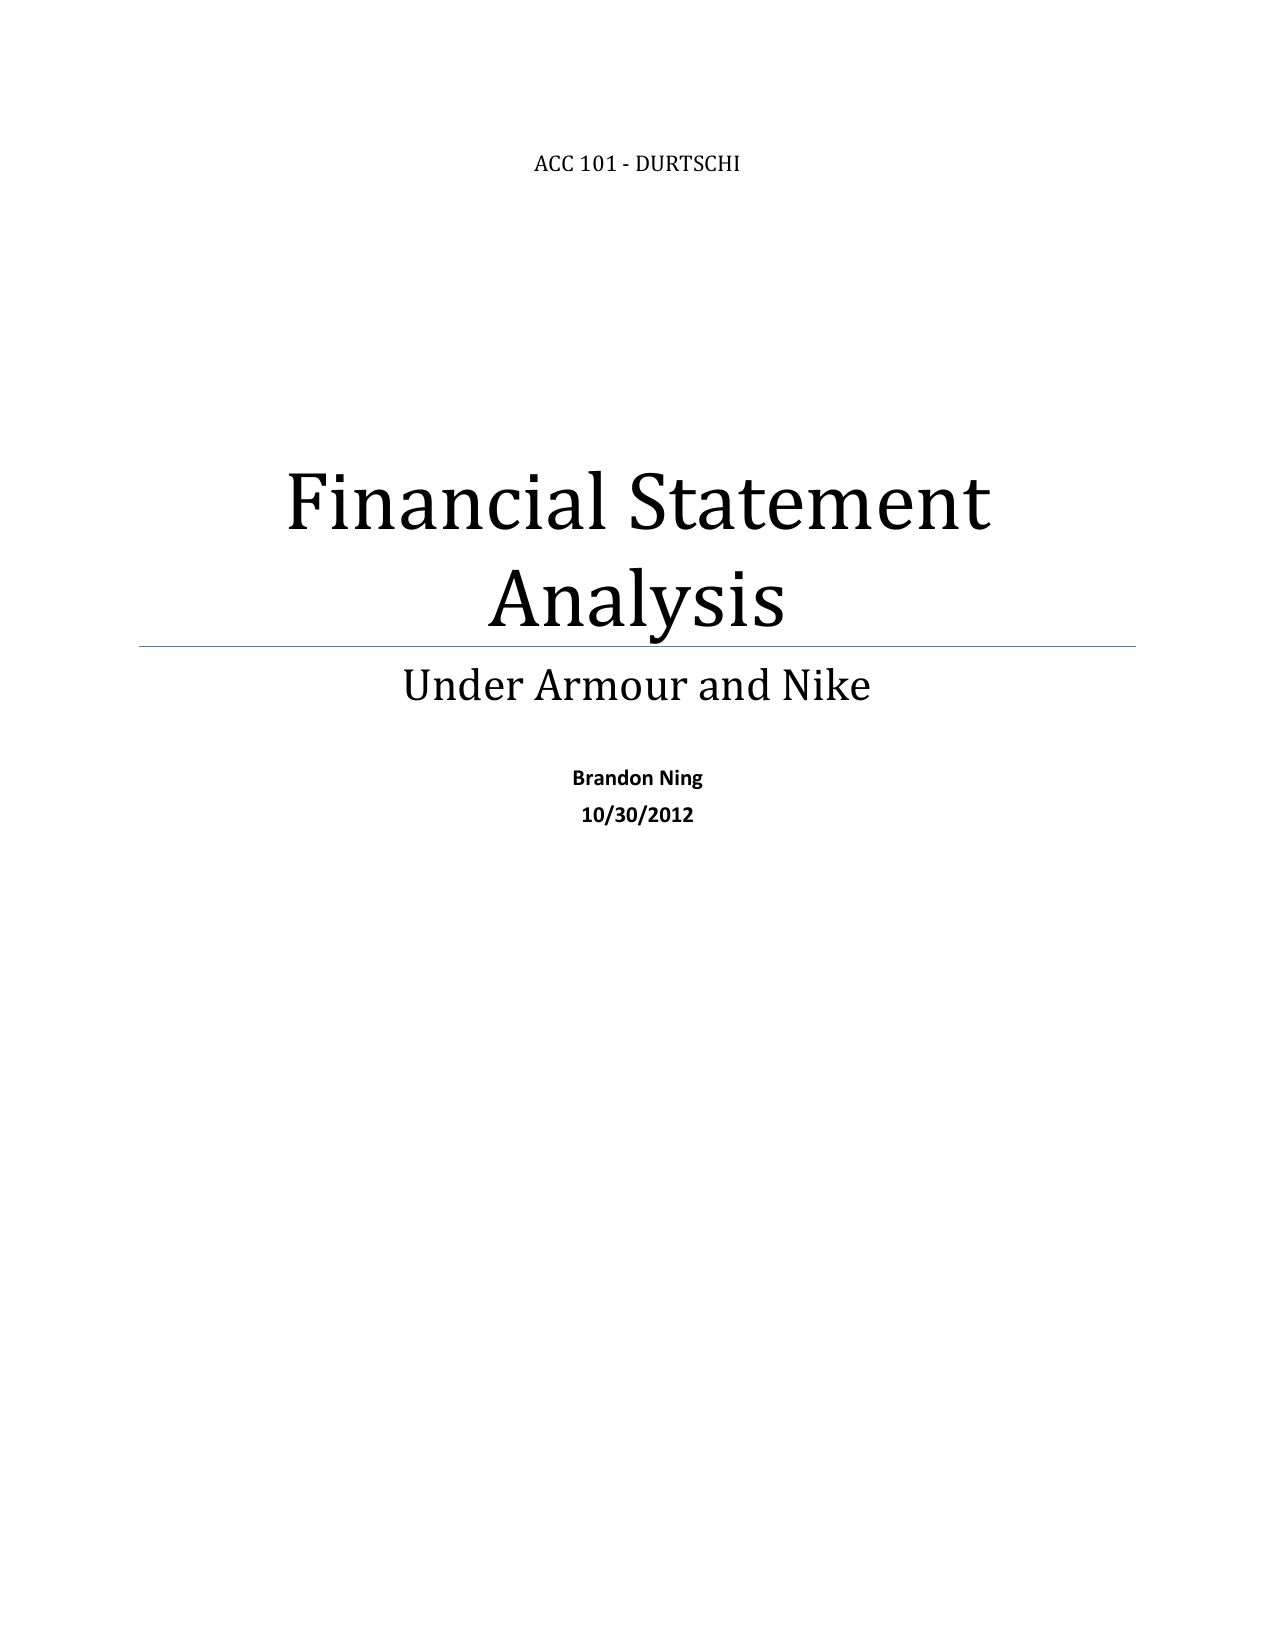 nike financial analysis